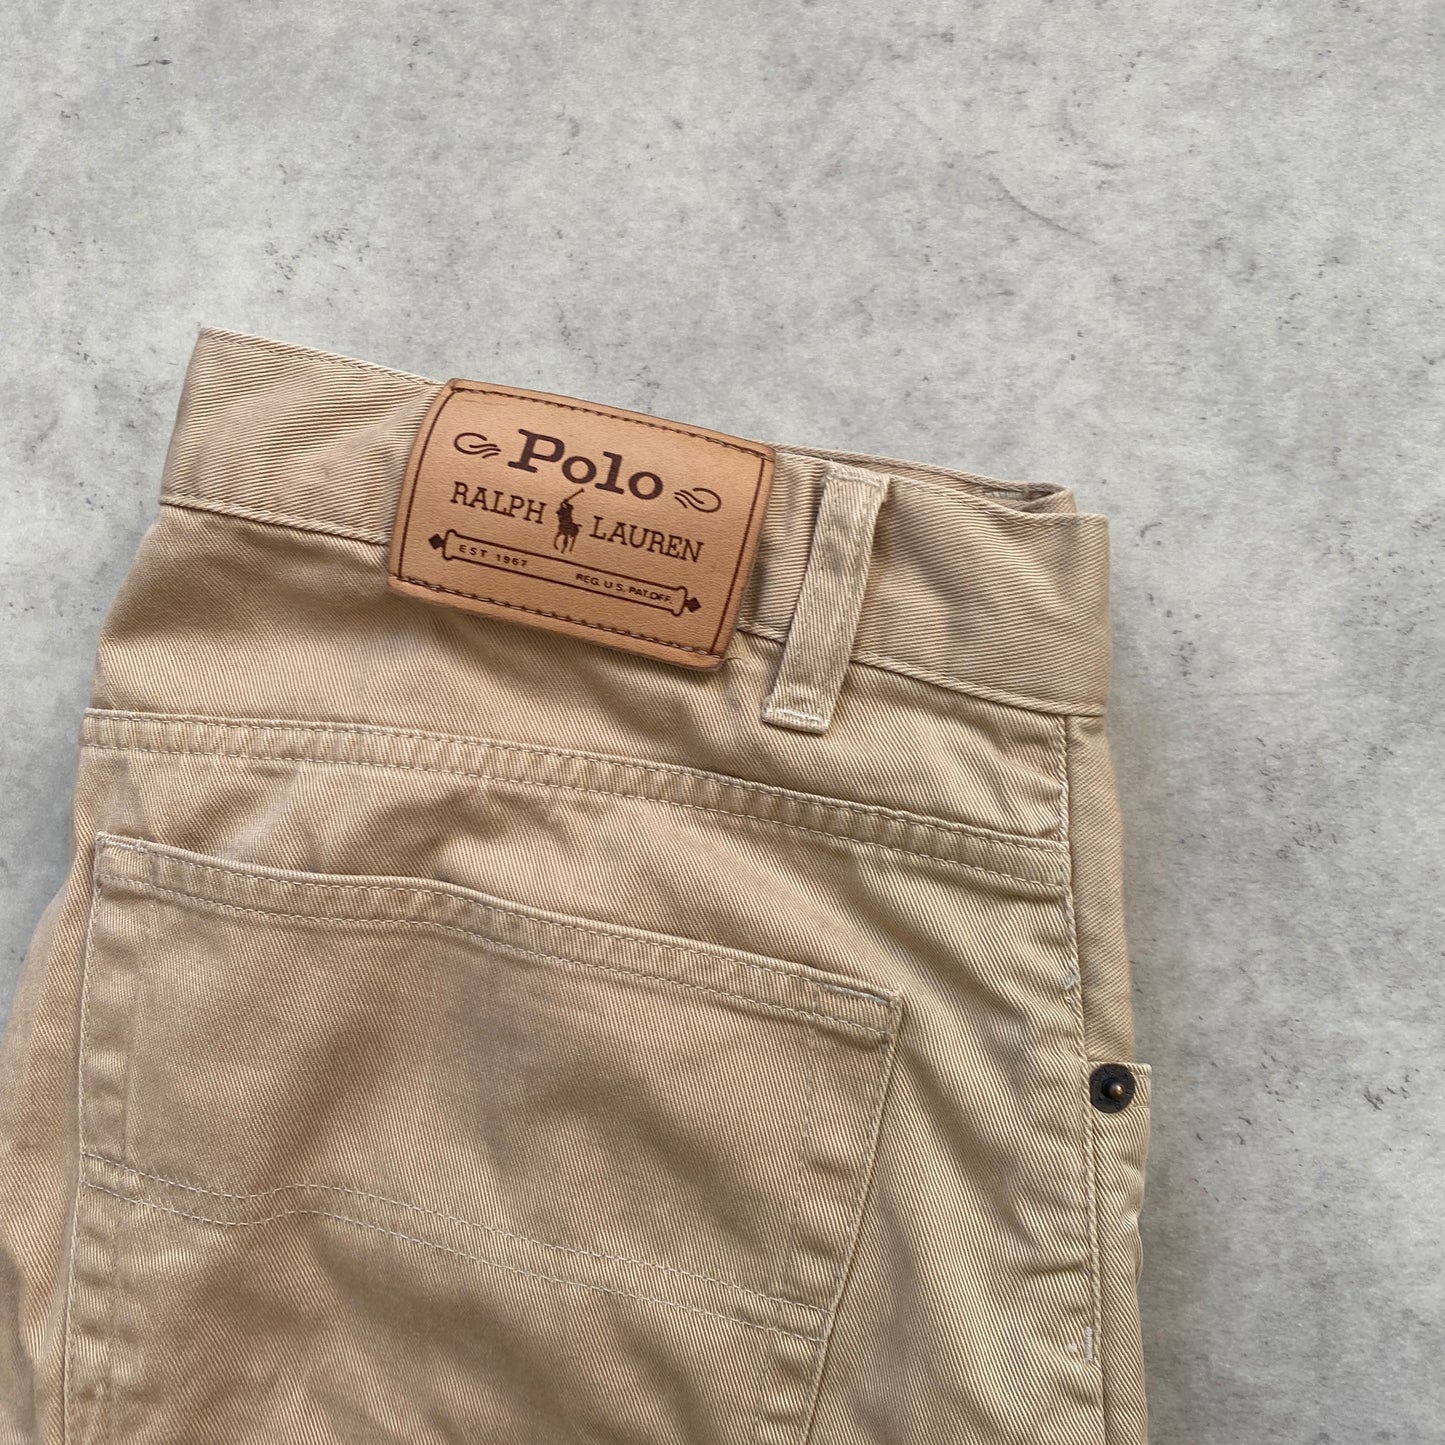 Polo Ralph Lauren pants (M-L)